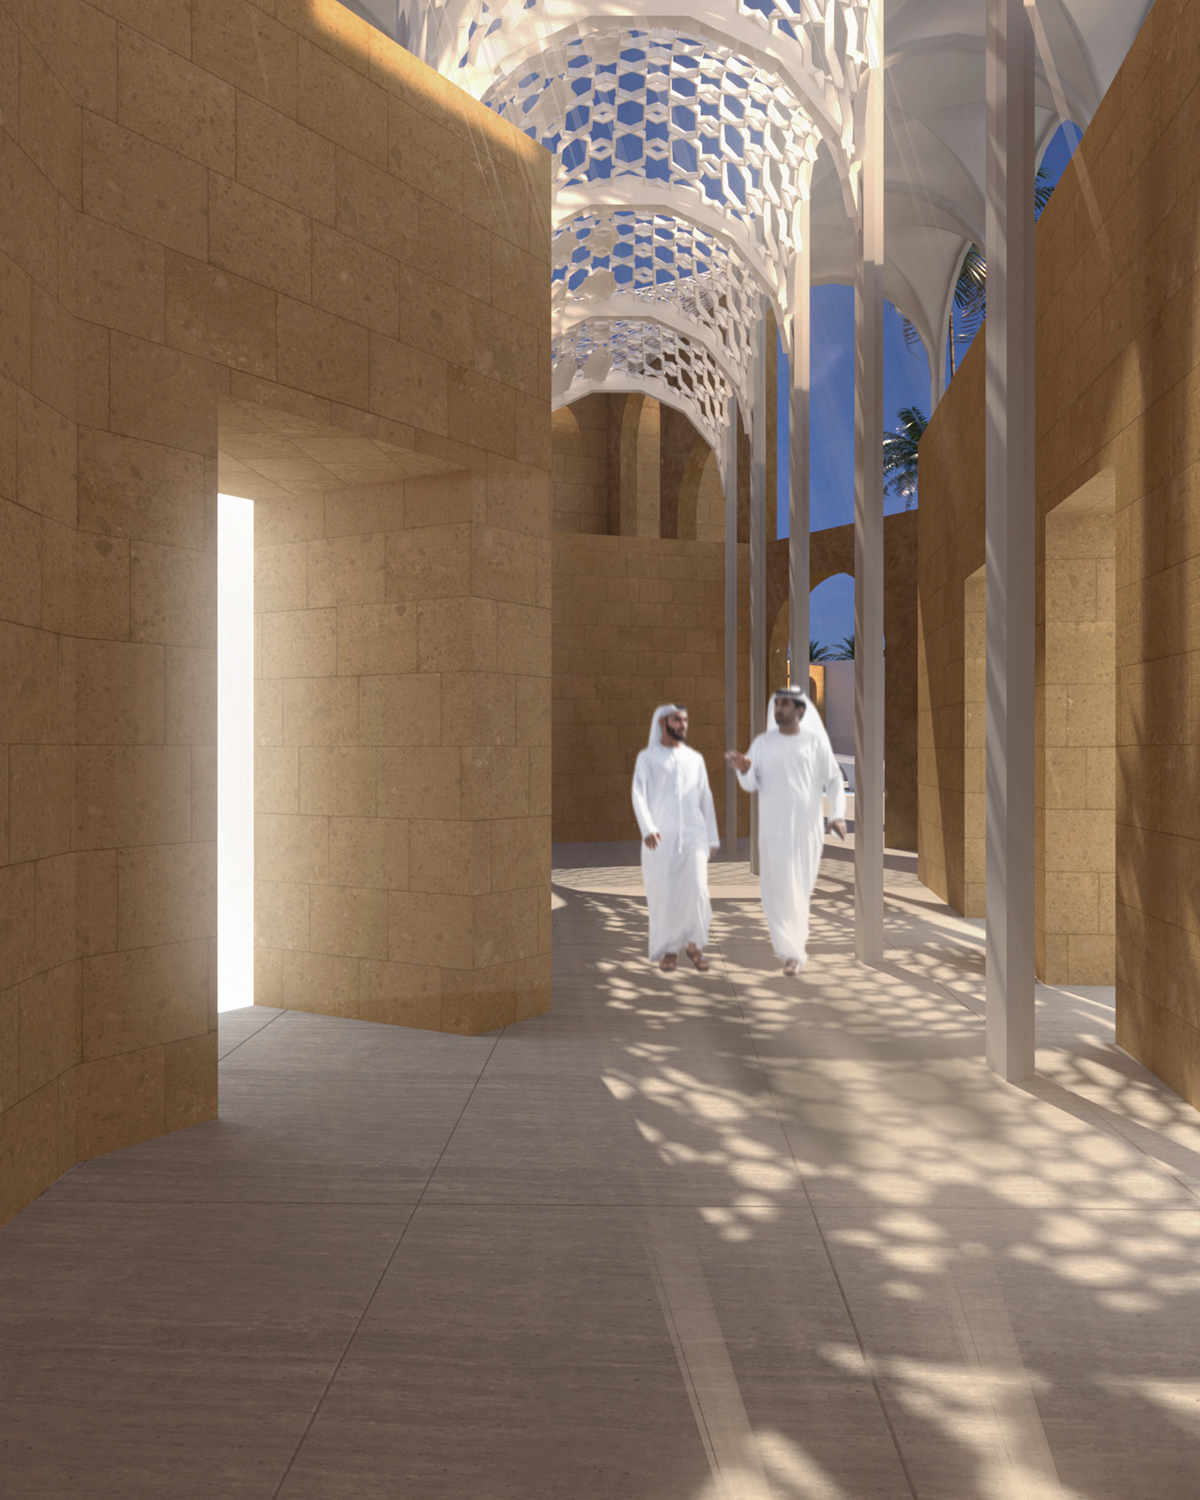 3D architecture architecturecompetition culture heritage identity Mosul Iraq rehabilitation UNESCO visualization